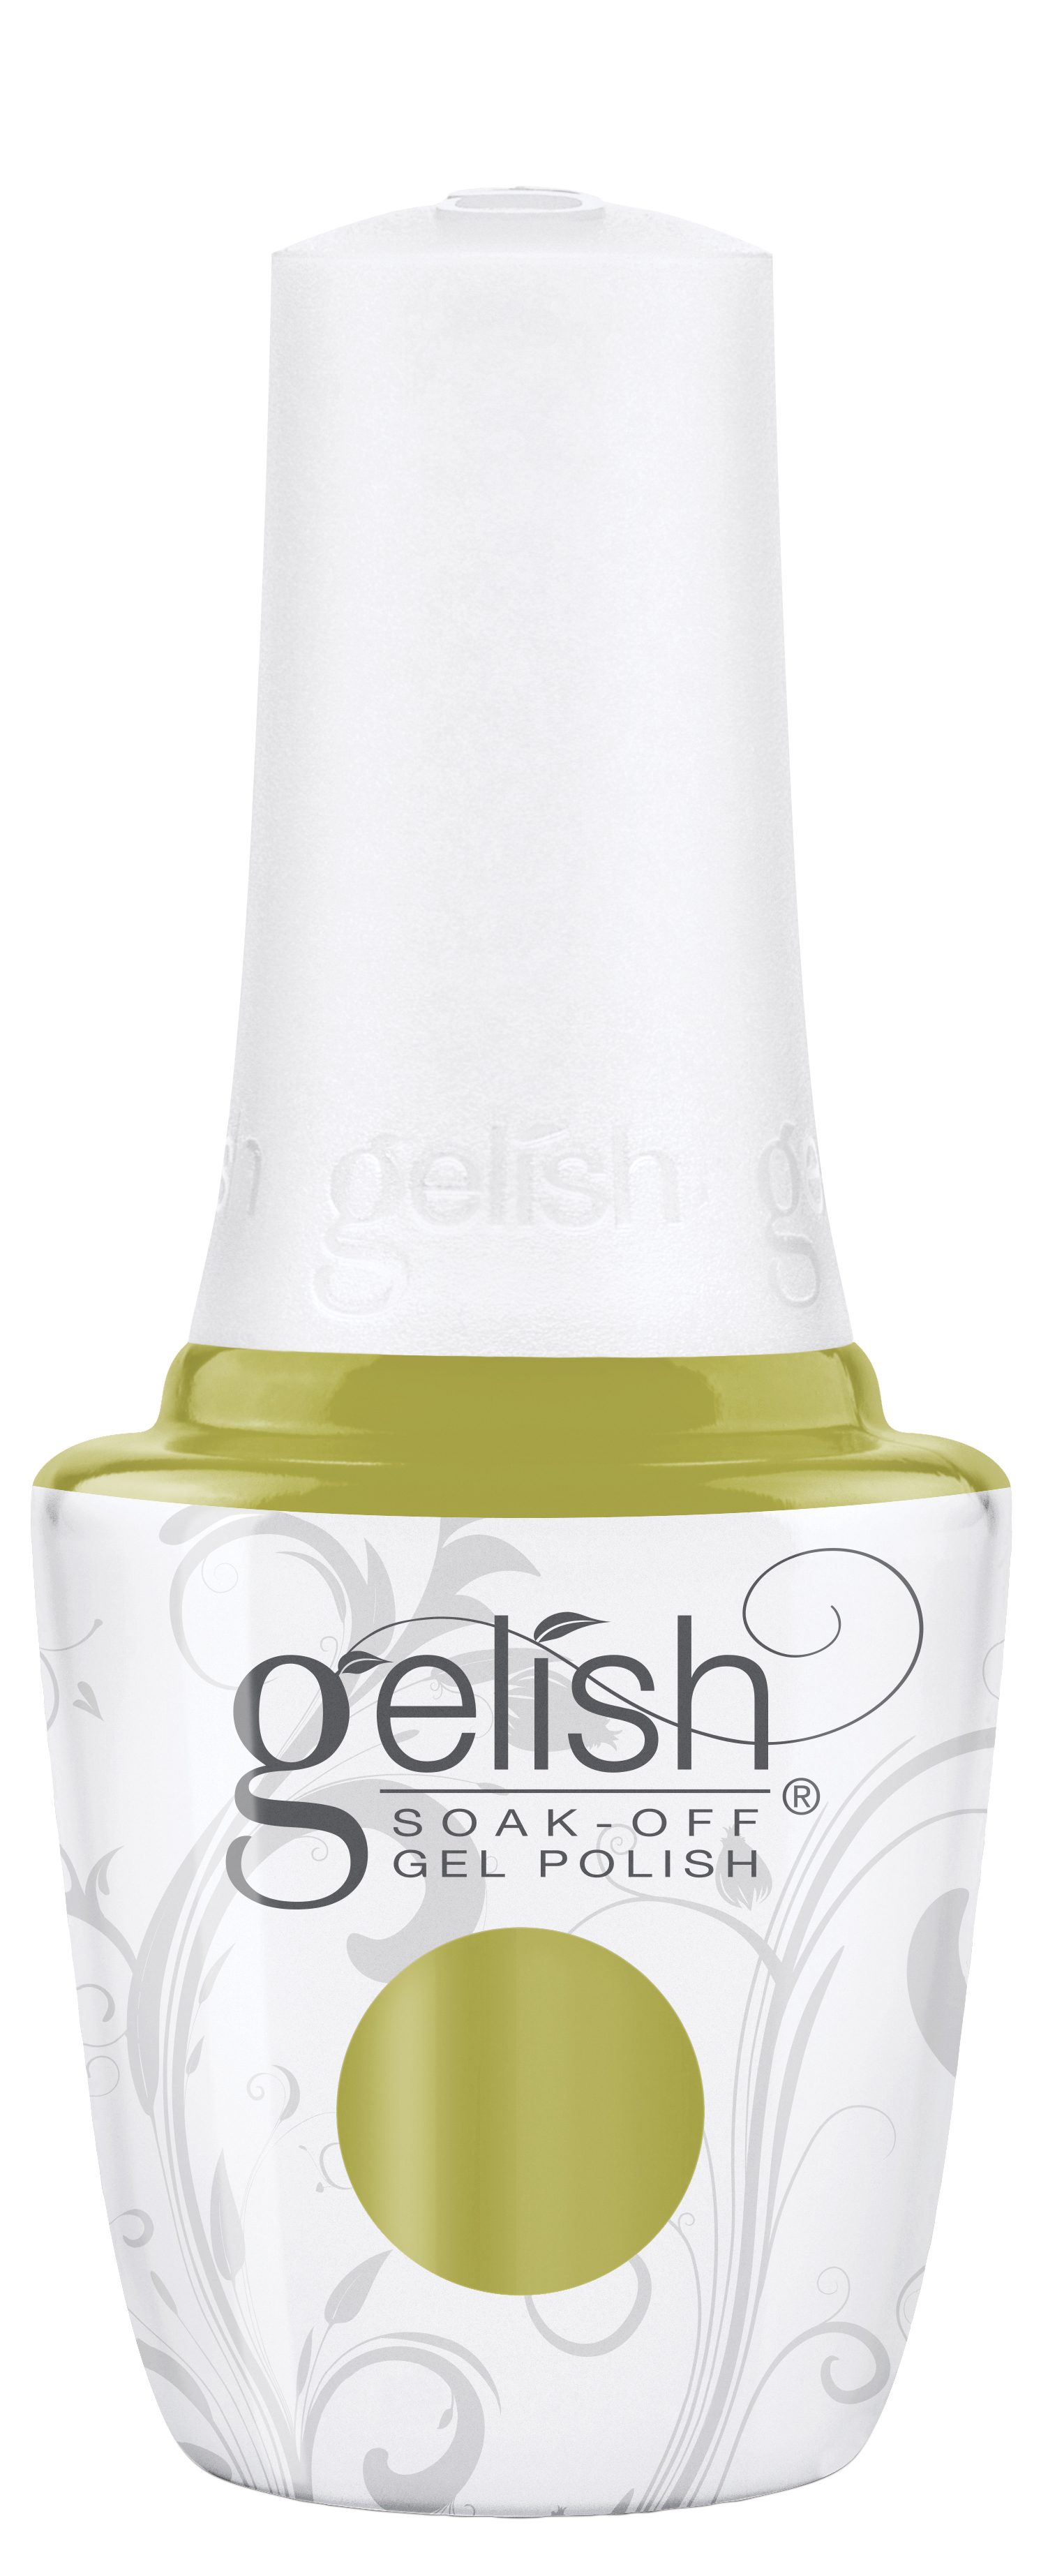 Gelish Soak-Off Gel Polish Flying Out Loud, 0.5 fl oz. 